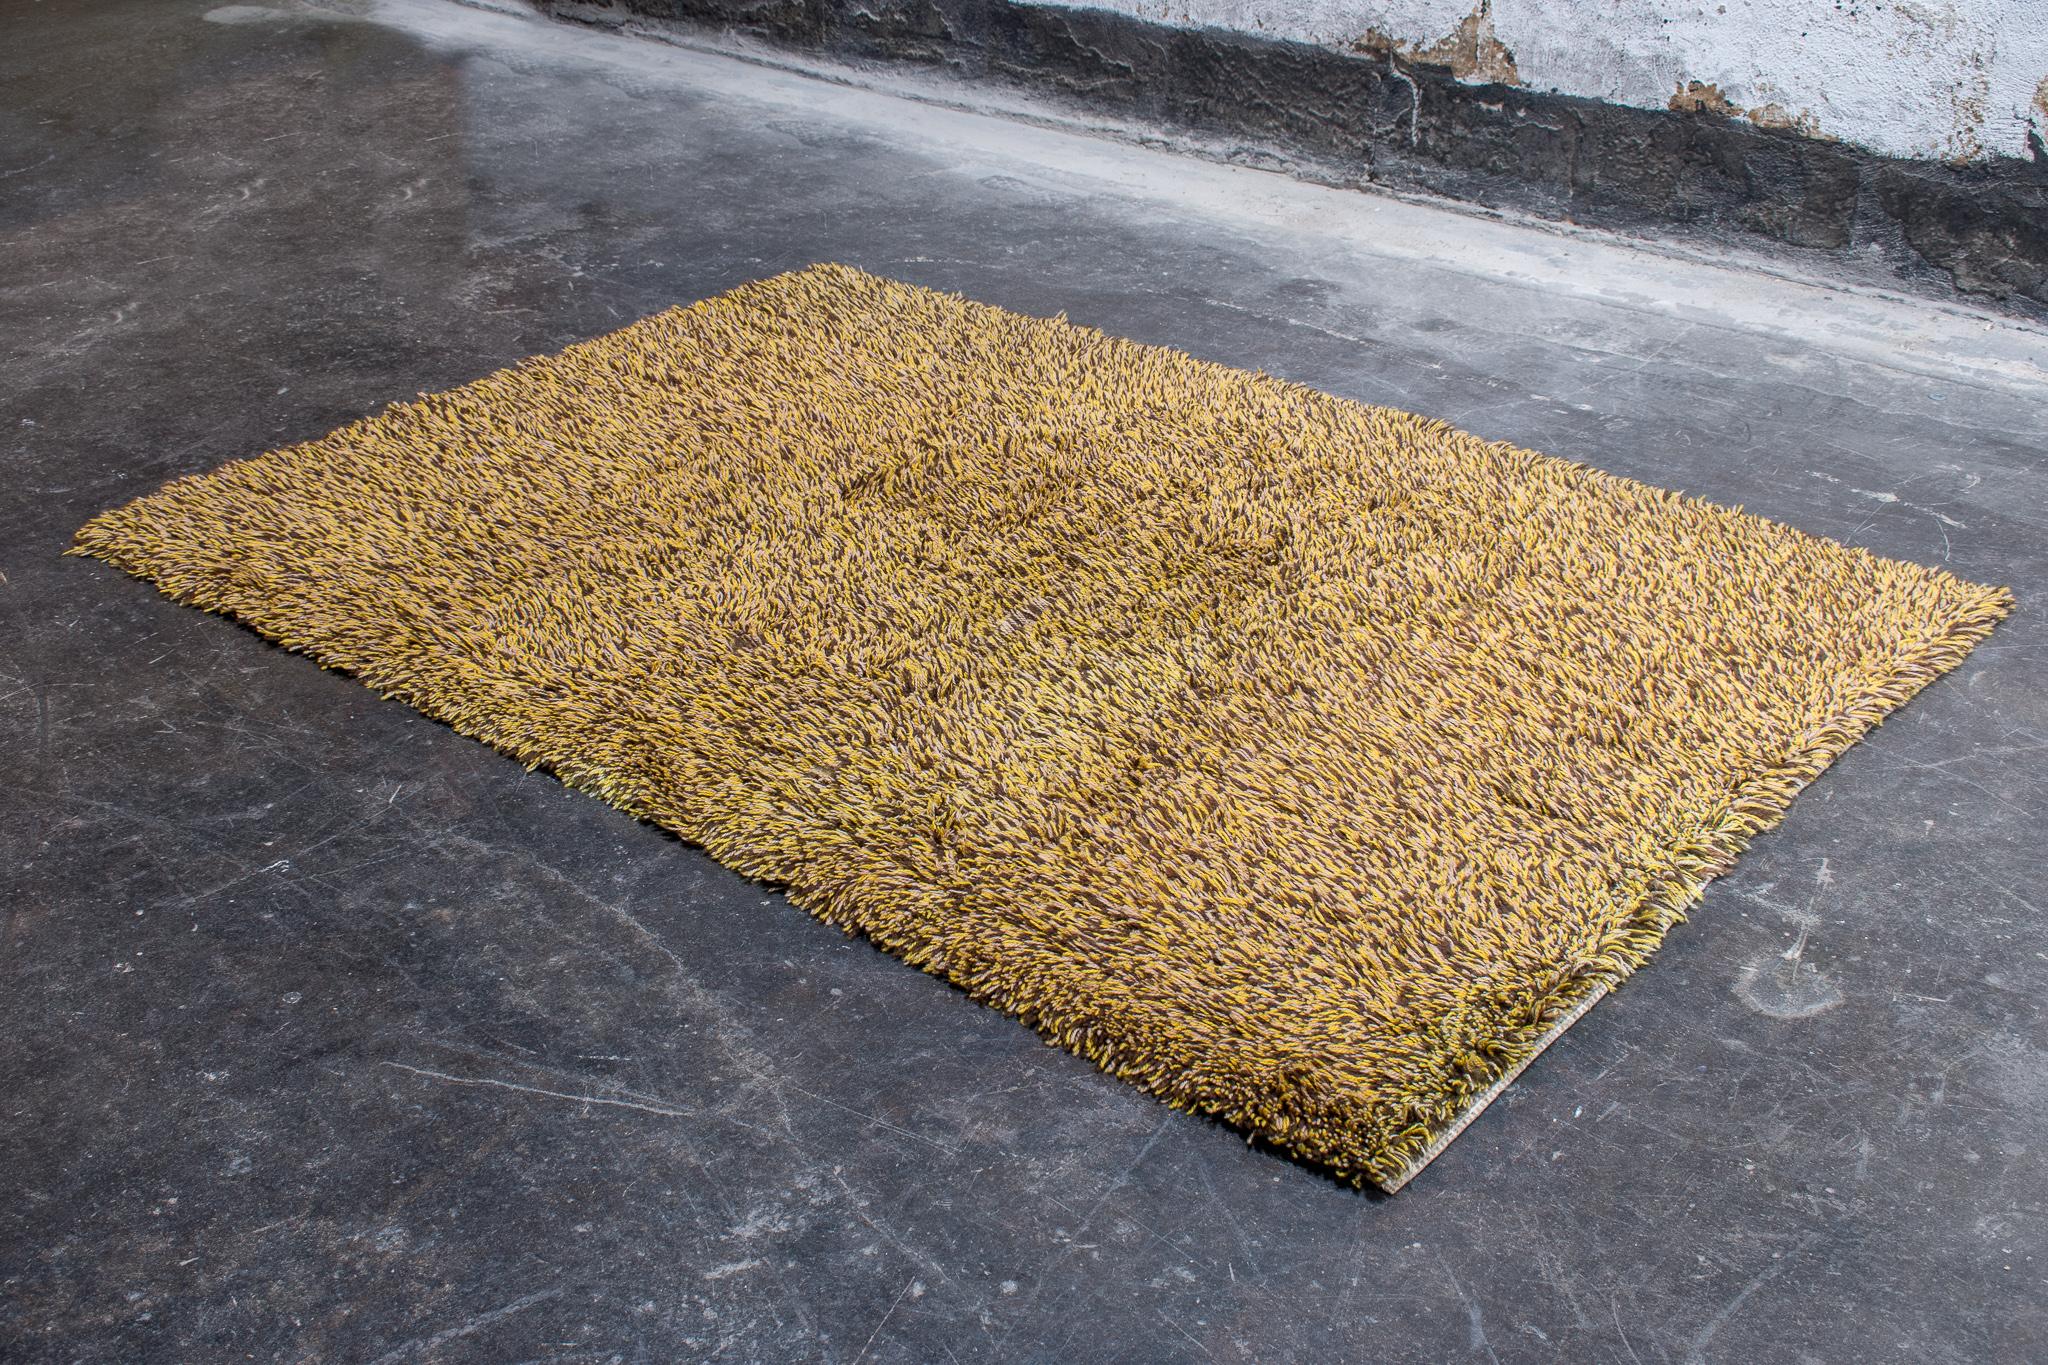 Schwedischer Shag Rya Teppich in verschiedenen Schattierungen von Gelbbraun und Hellgrün. Handgeknüpfter Shag-Teppich aus Wolle, hergestellt in Schweden, um 1960. Hübsches kleines Format zur Akzentuierung eines Teils eines Raumes.